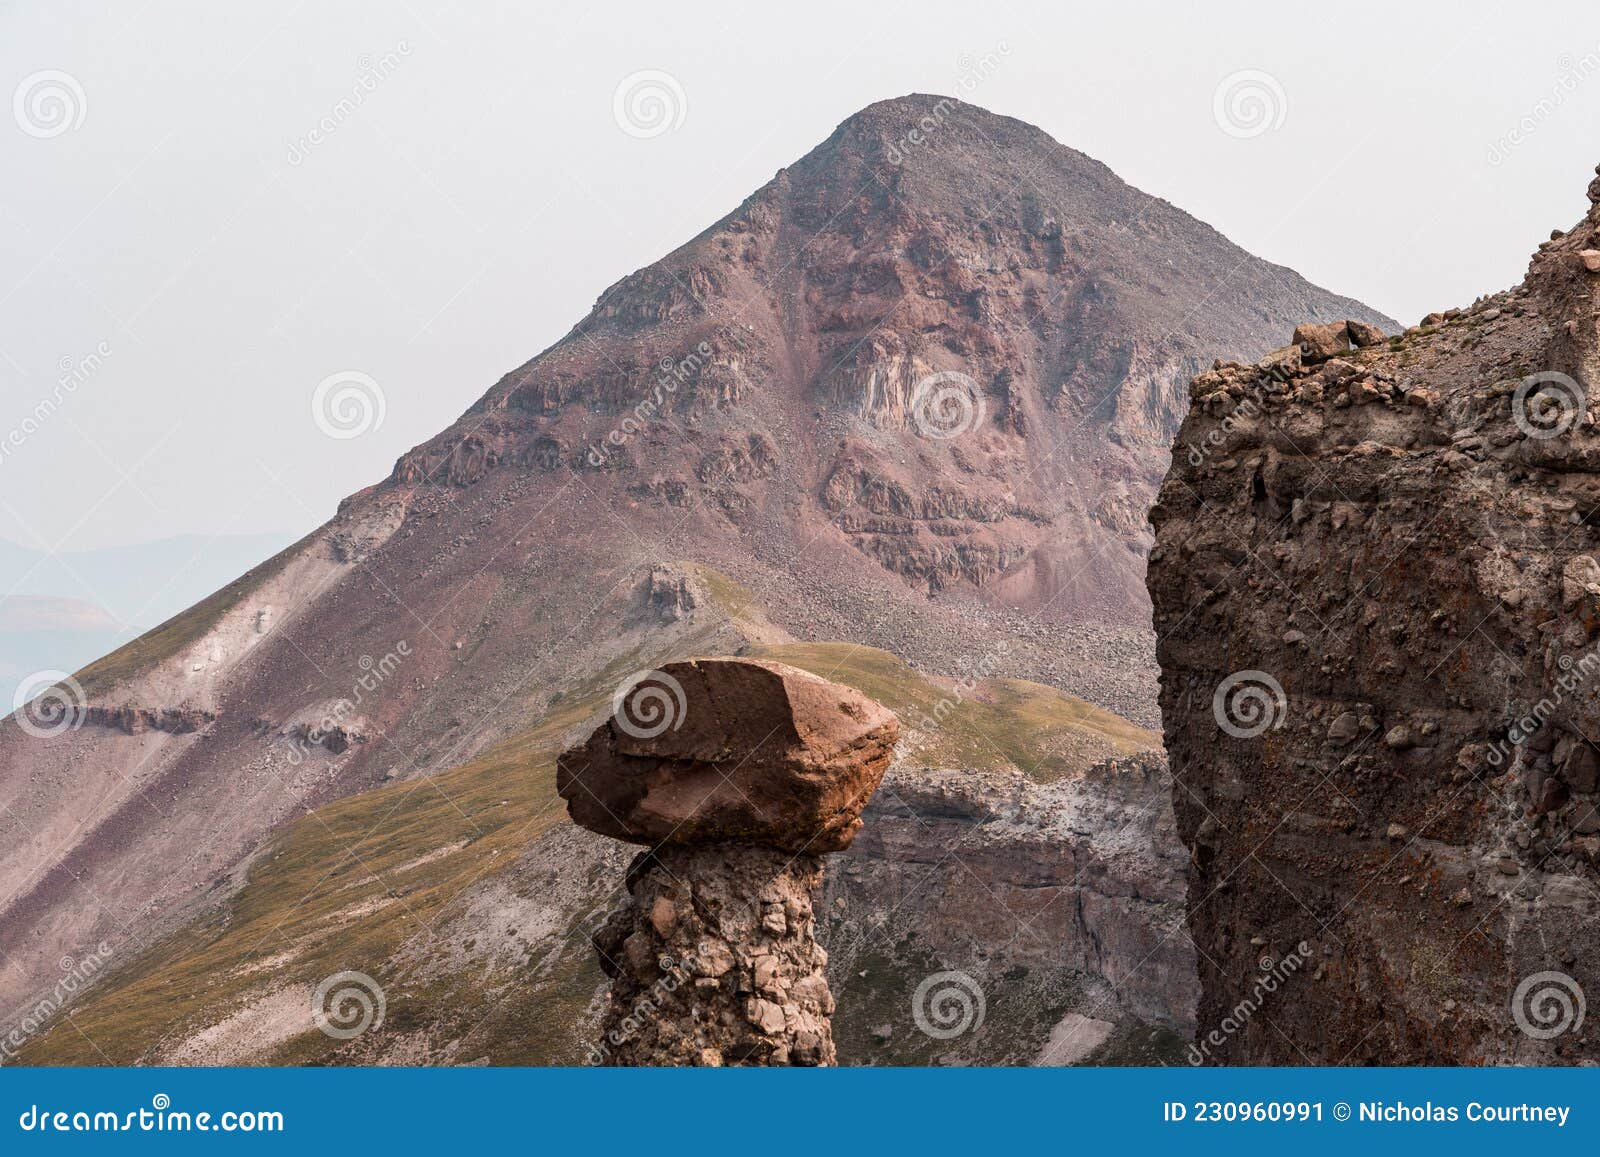 rio grande pyramid. a mountain in the san juan range of the colorado rocky mountains